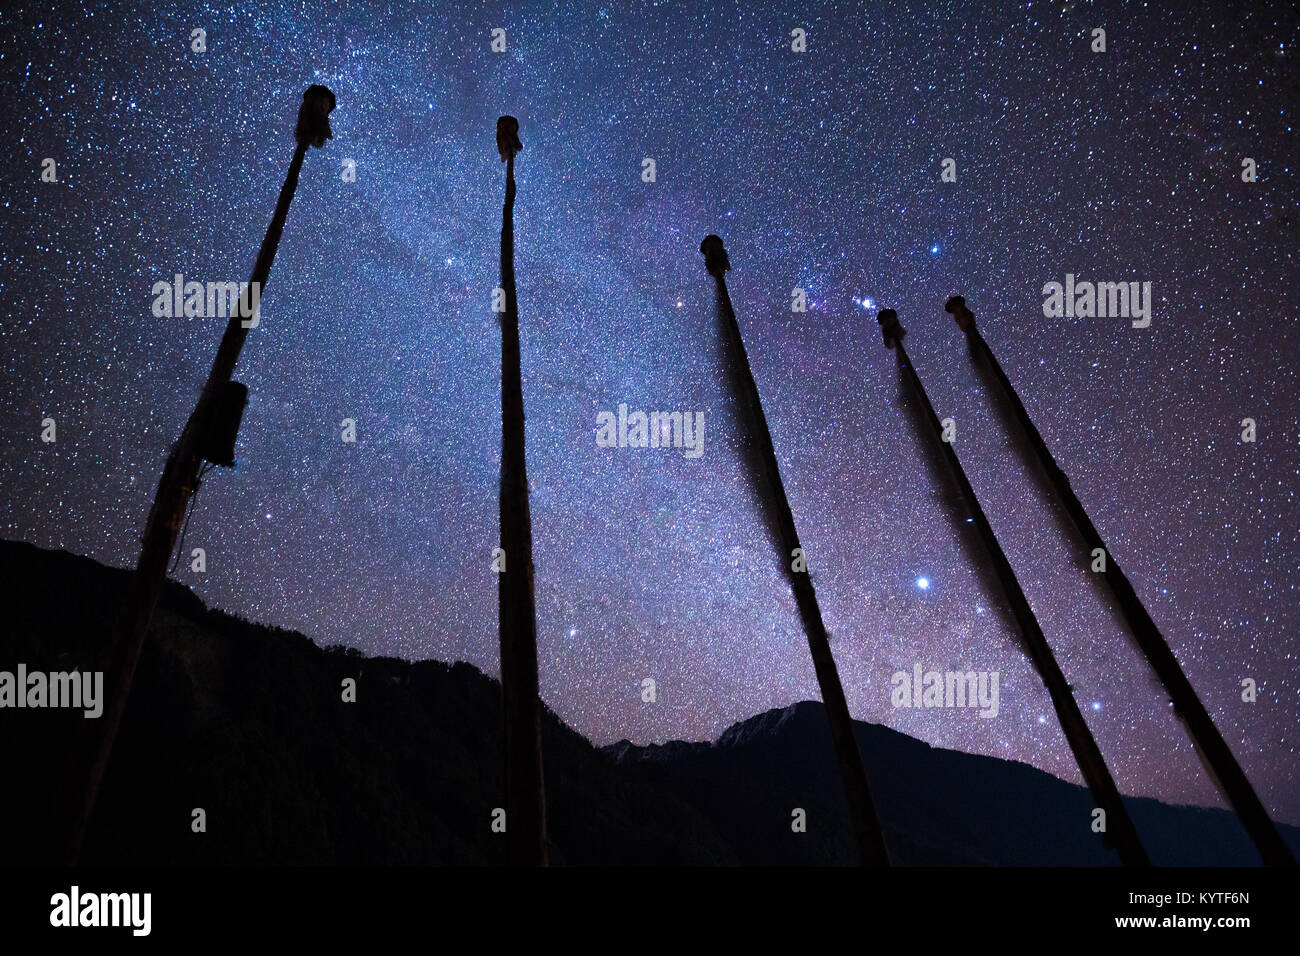 Des milliards d'étoiles ornent le ciel nocturne au-dessus des montagnes enneigées de Lachen village dans le Nord du Sikkim, Inde. Astro photographie dans le nord-est de l'Inde. Banque D'Images